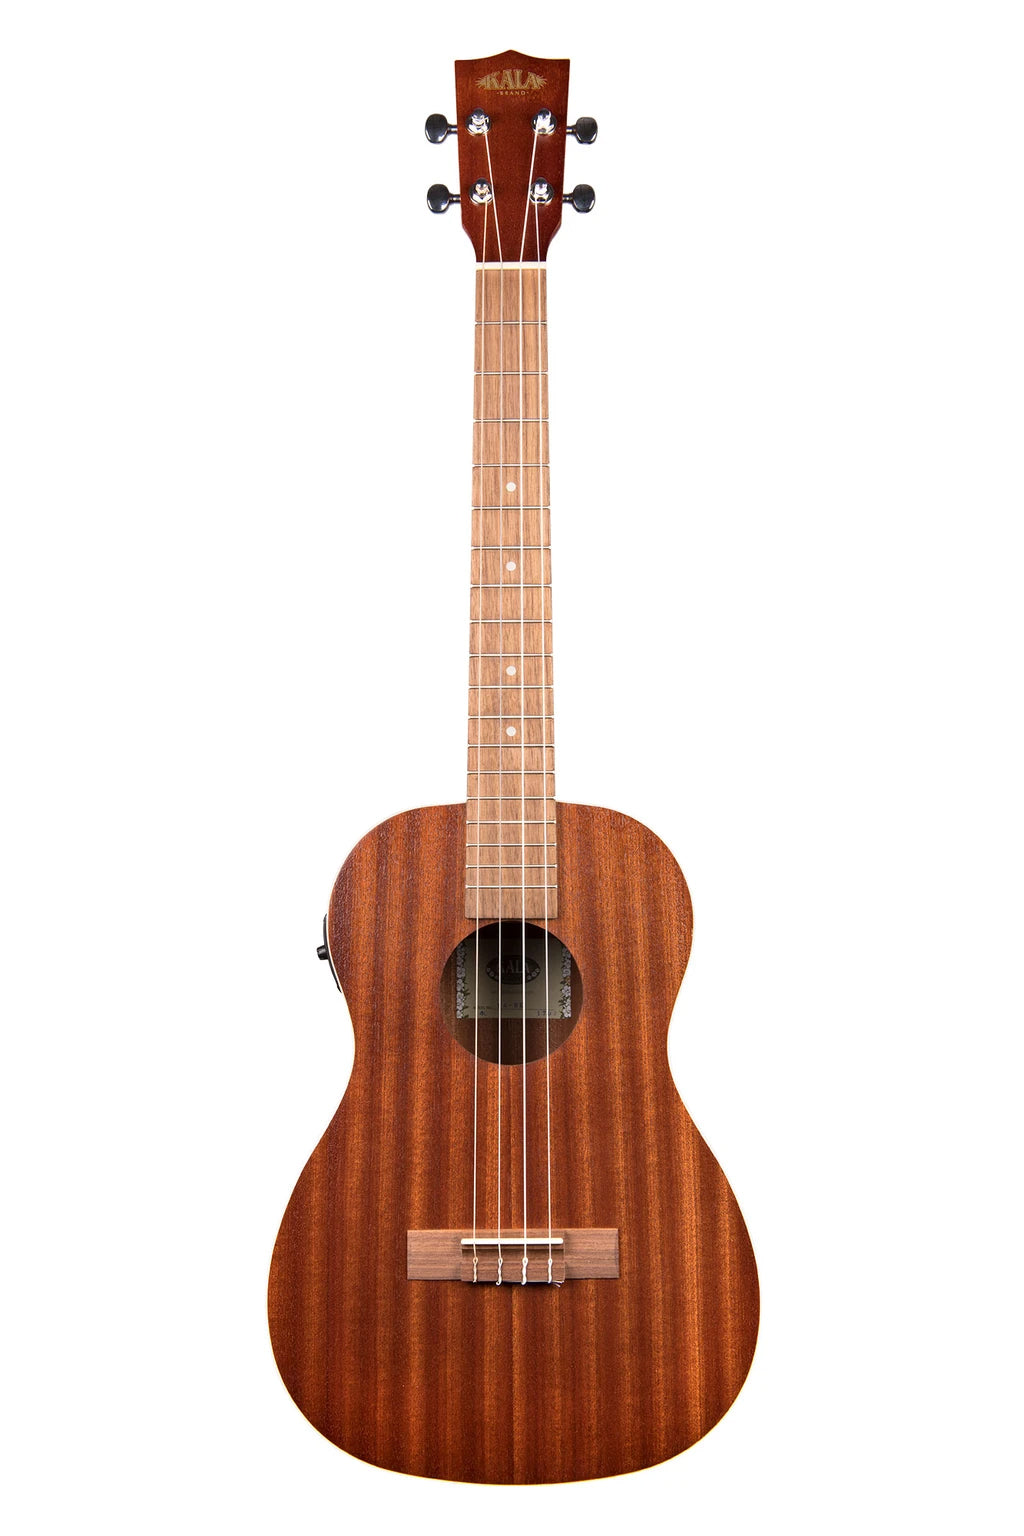 KA-BE-Kala-Baritone-Ukulele-Electric-pickup-face front ukulele-trading-co-australia